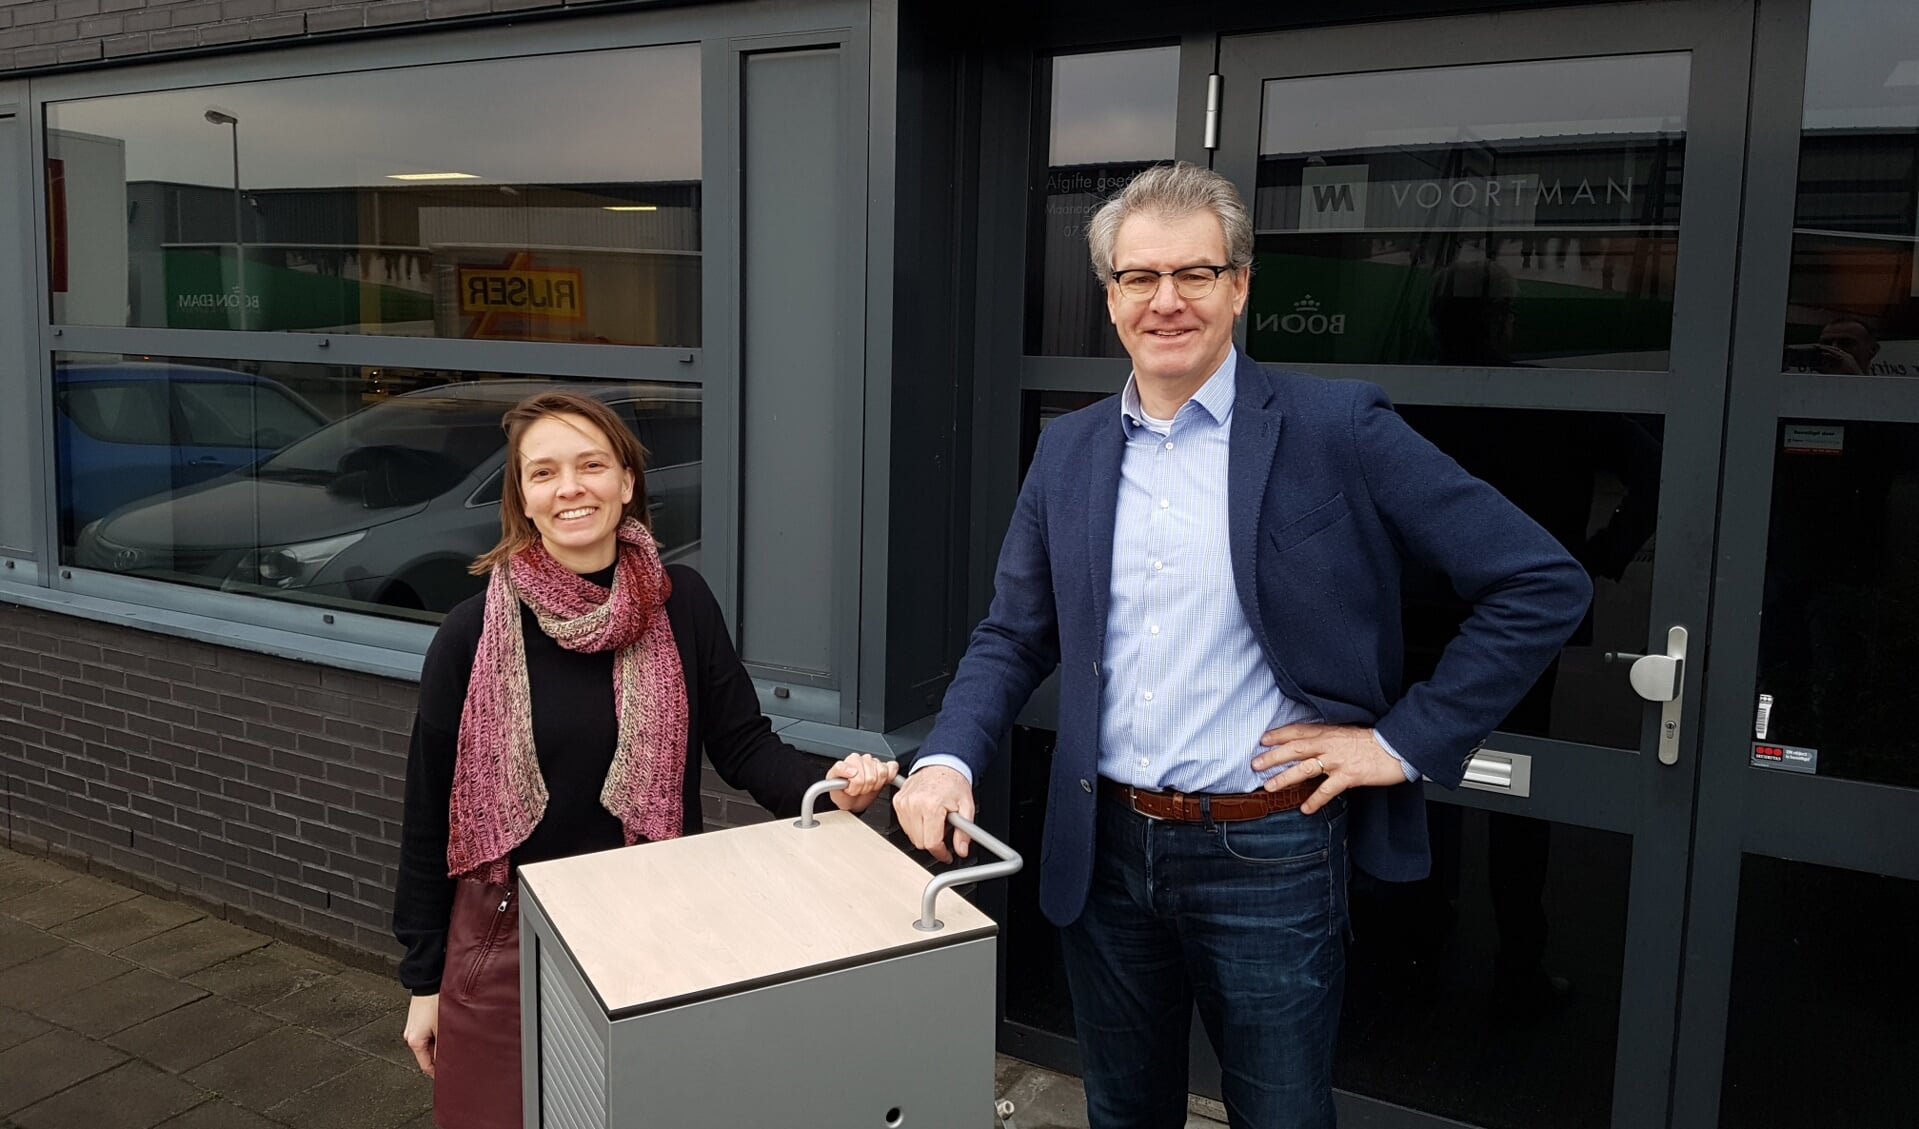 Consulente Anne Debets van WonenPlus en Voortman-directeur Sjaak Lambalk met het kastje. (Foto: aangeleverd)